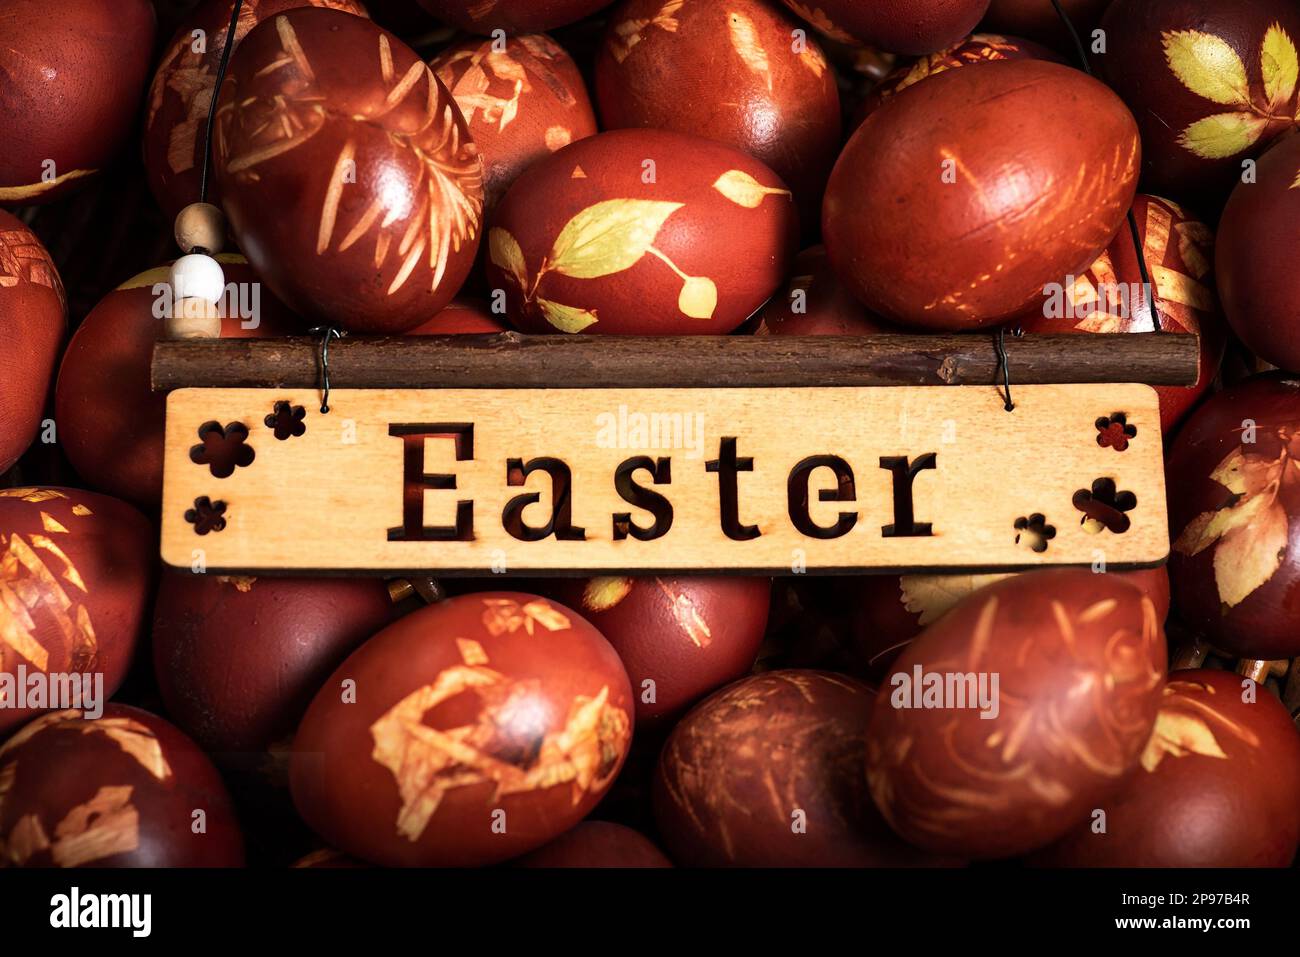 Uova di pasqua tradizionali tinte in buccia di cipolla. Vacanza leggera di Pasqua. Tradizioni religiose. Foto Stock